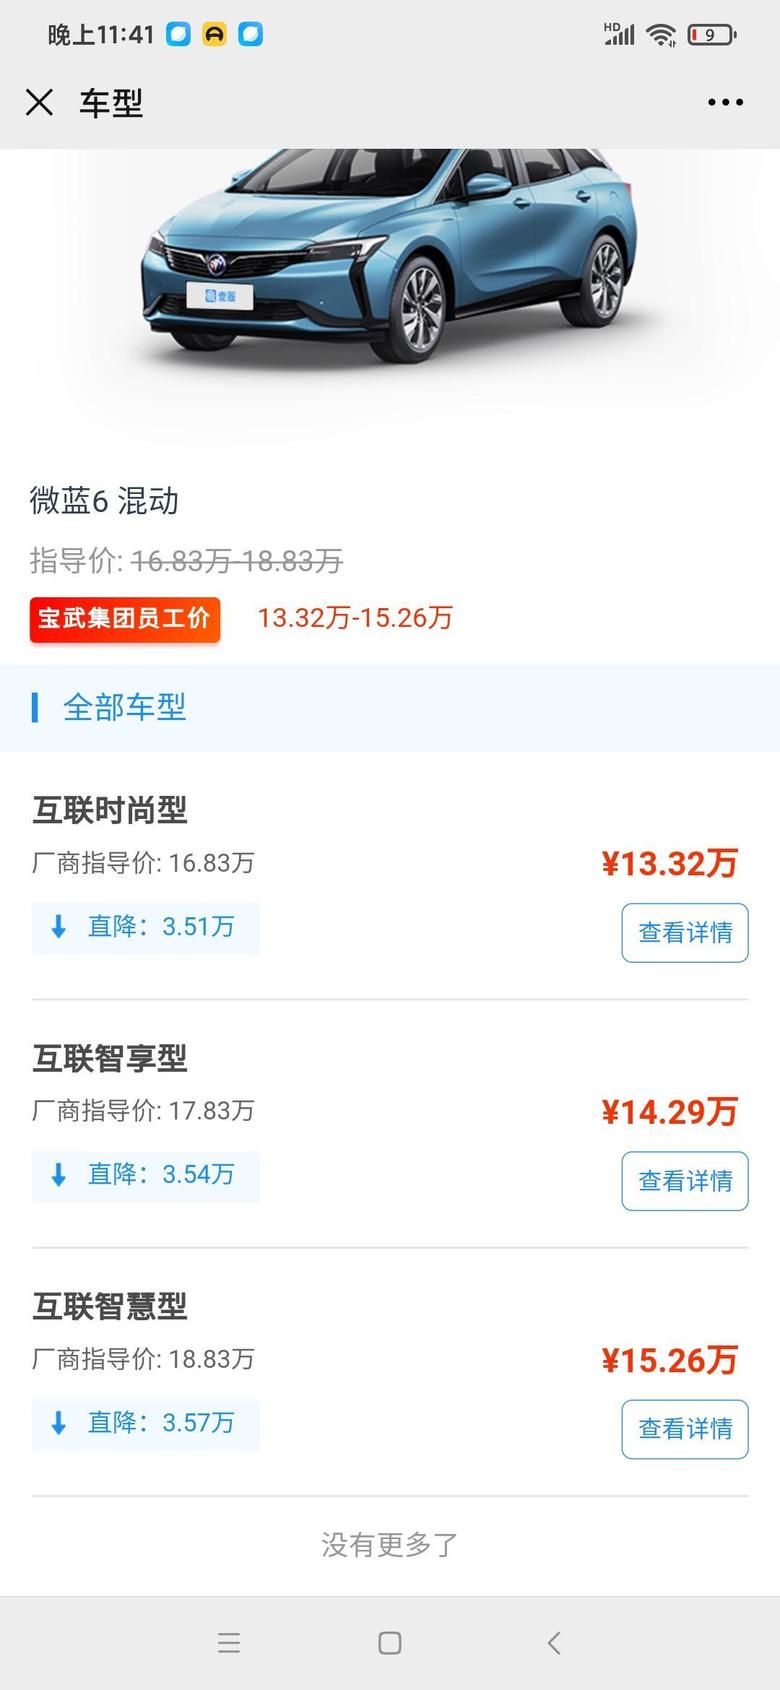 微蓝6 phev 上海的价格